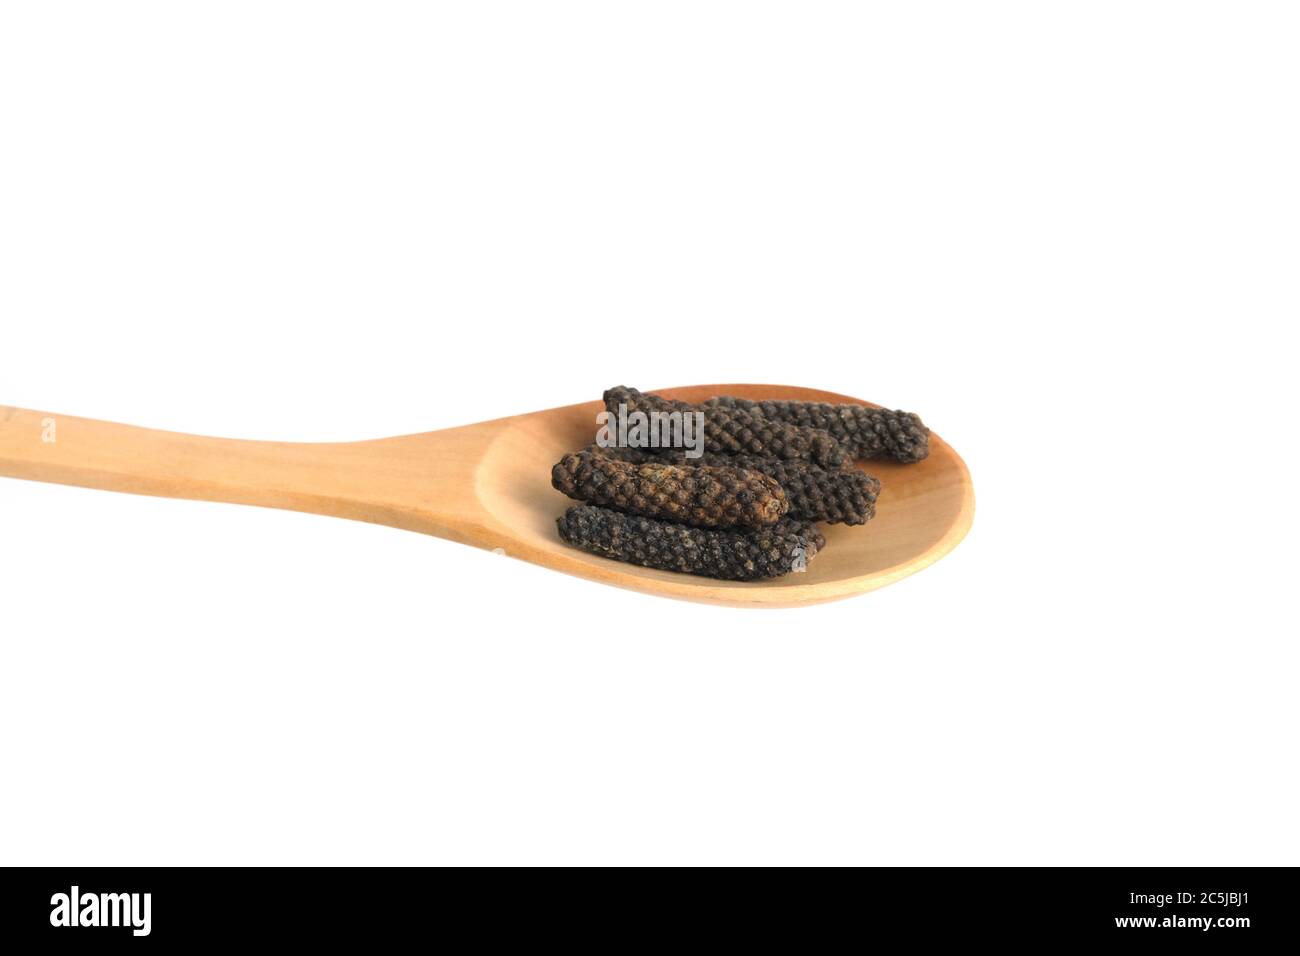 Retrofattum di Piper essiccato, pepe lungo balinese o pepe lungo giavanese su cucchiaio di legno, isolato su sfondo bianco. Foto Stock